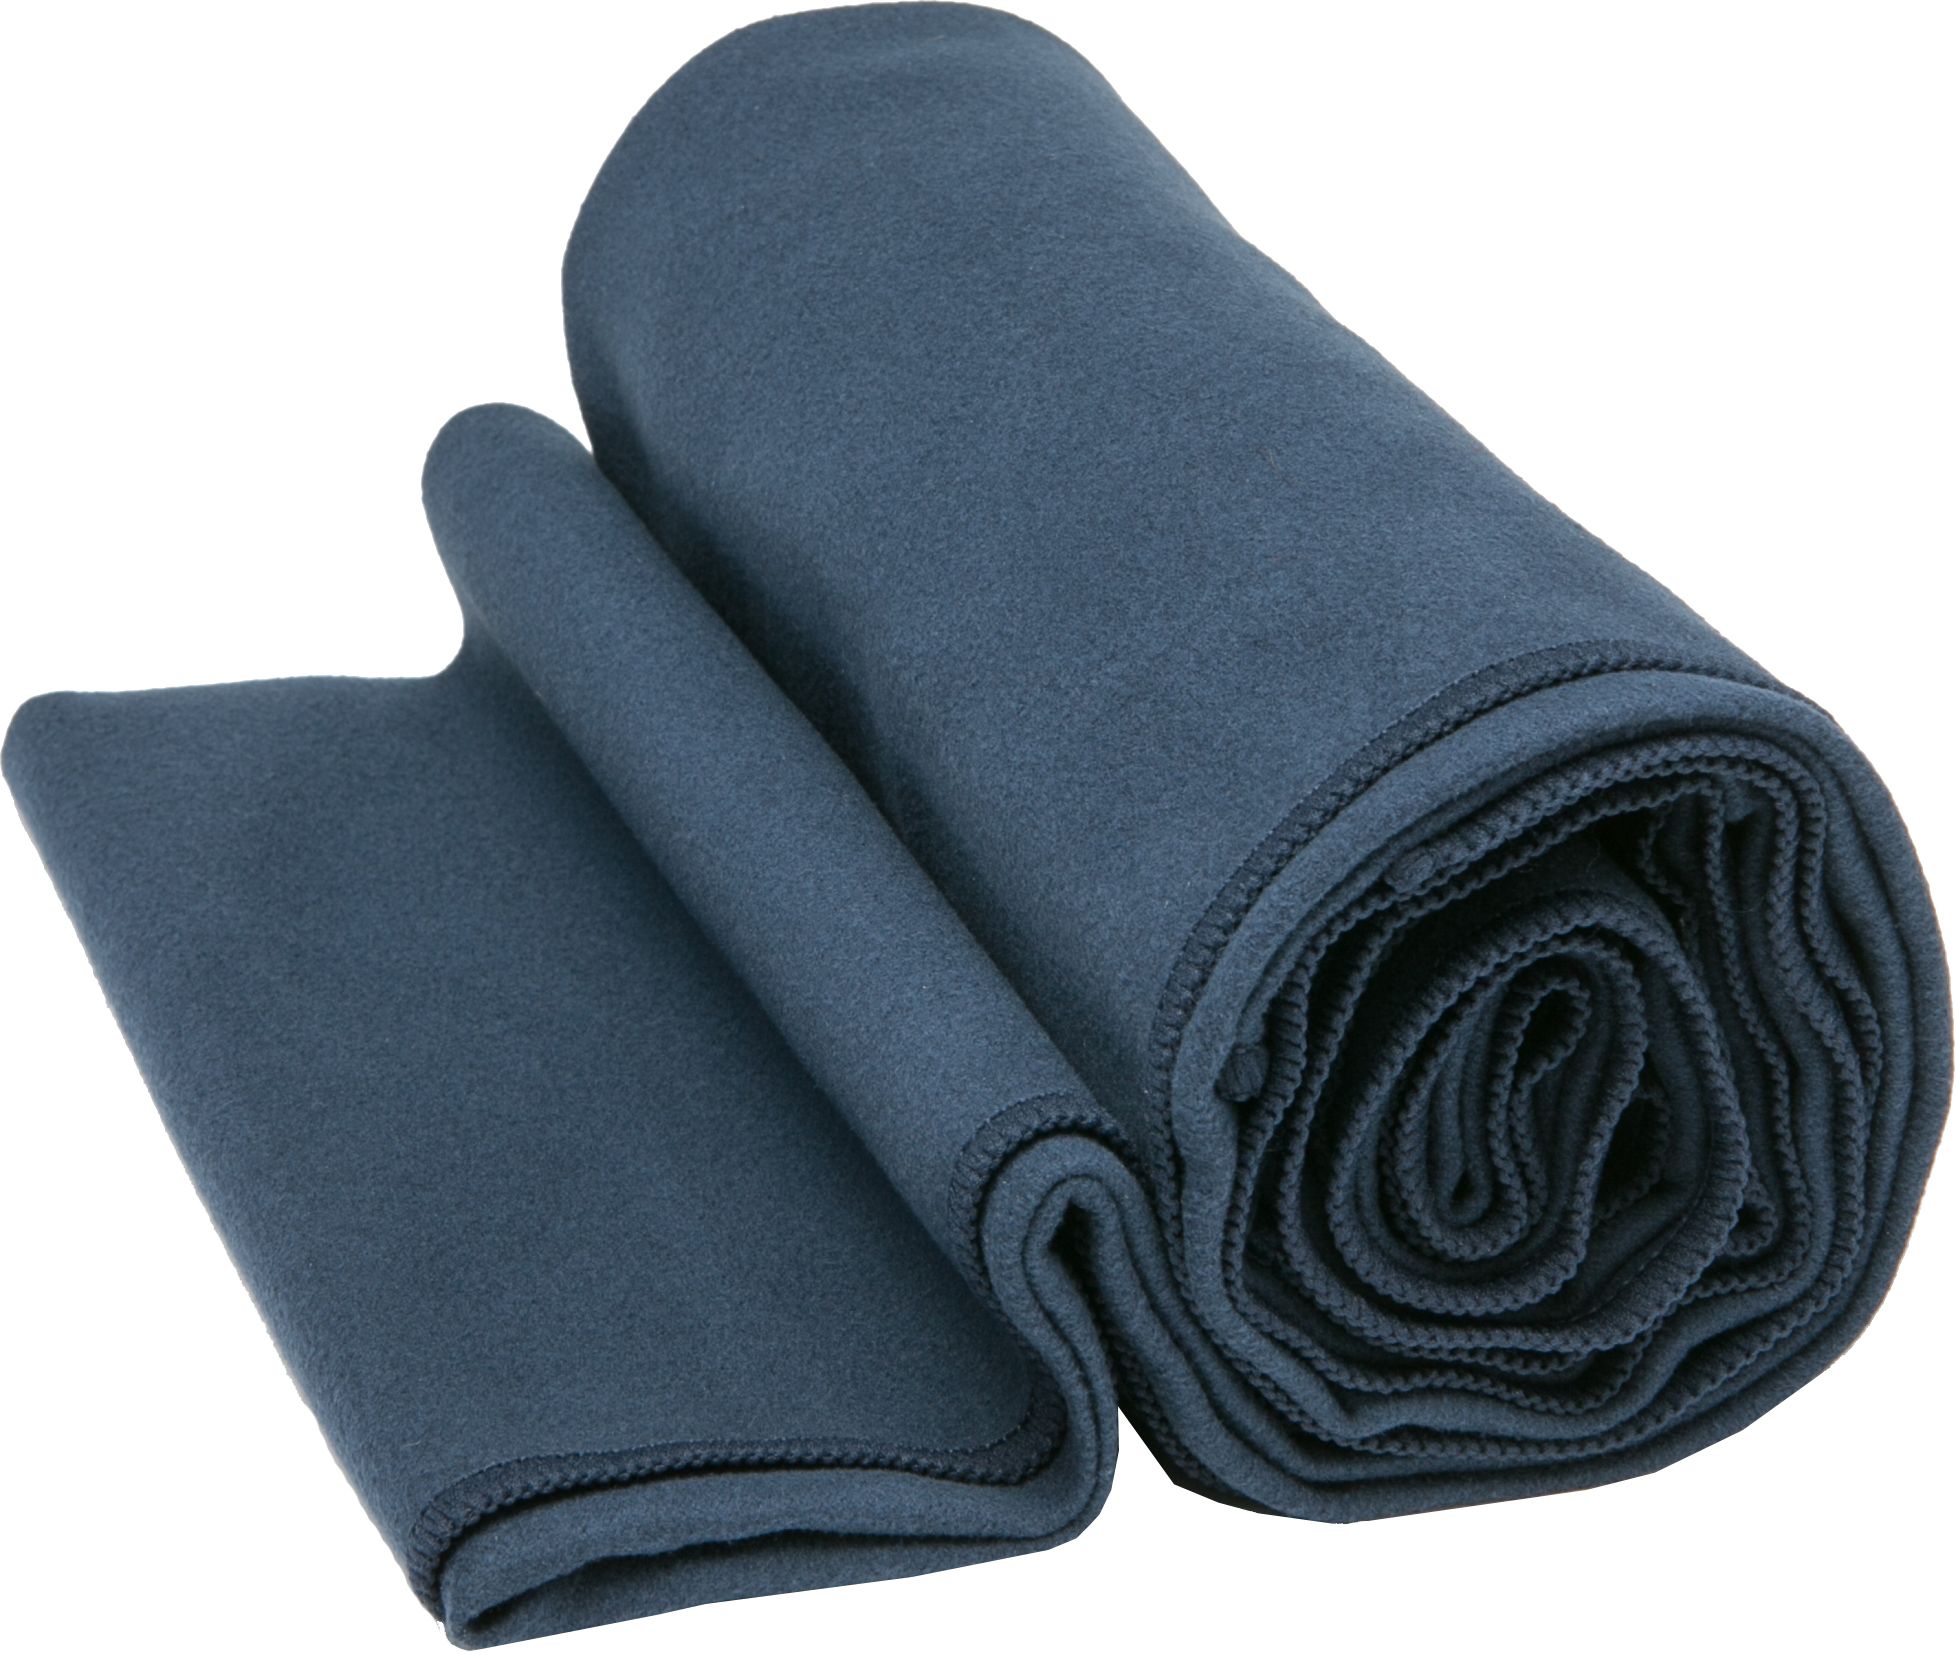 equa mat towel